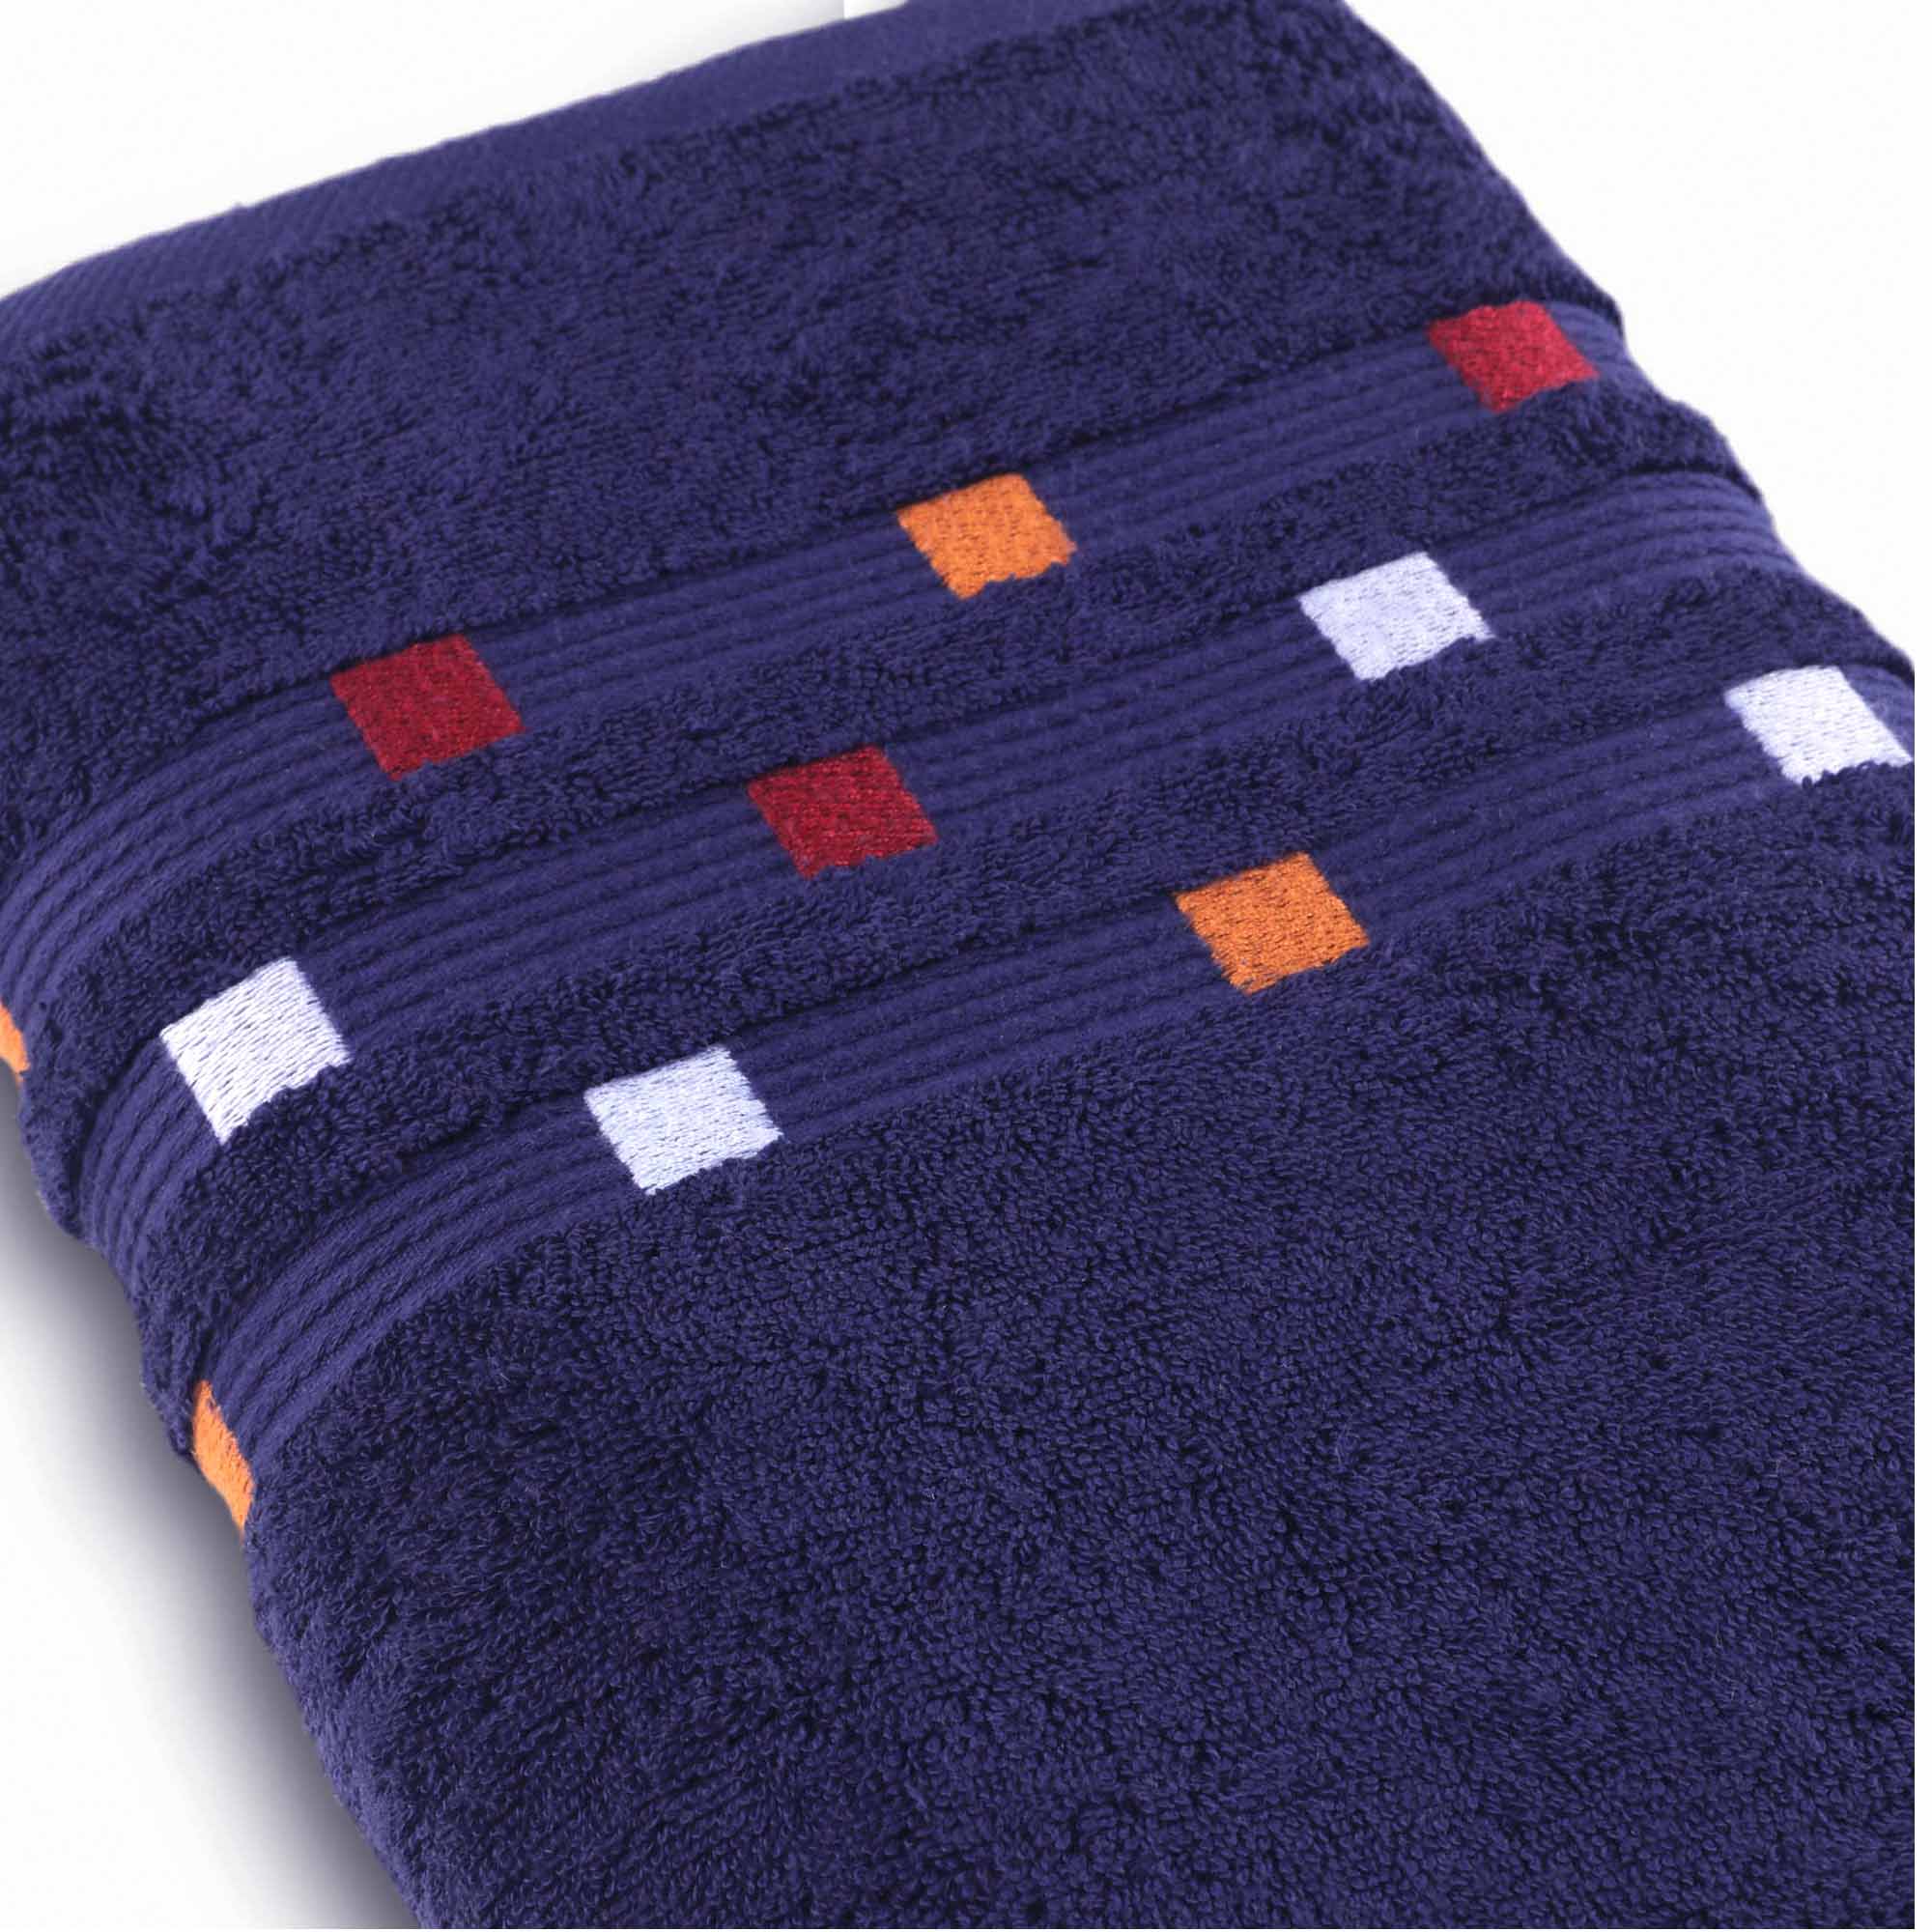 Panache - 3 Piece Towel Set